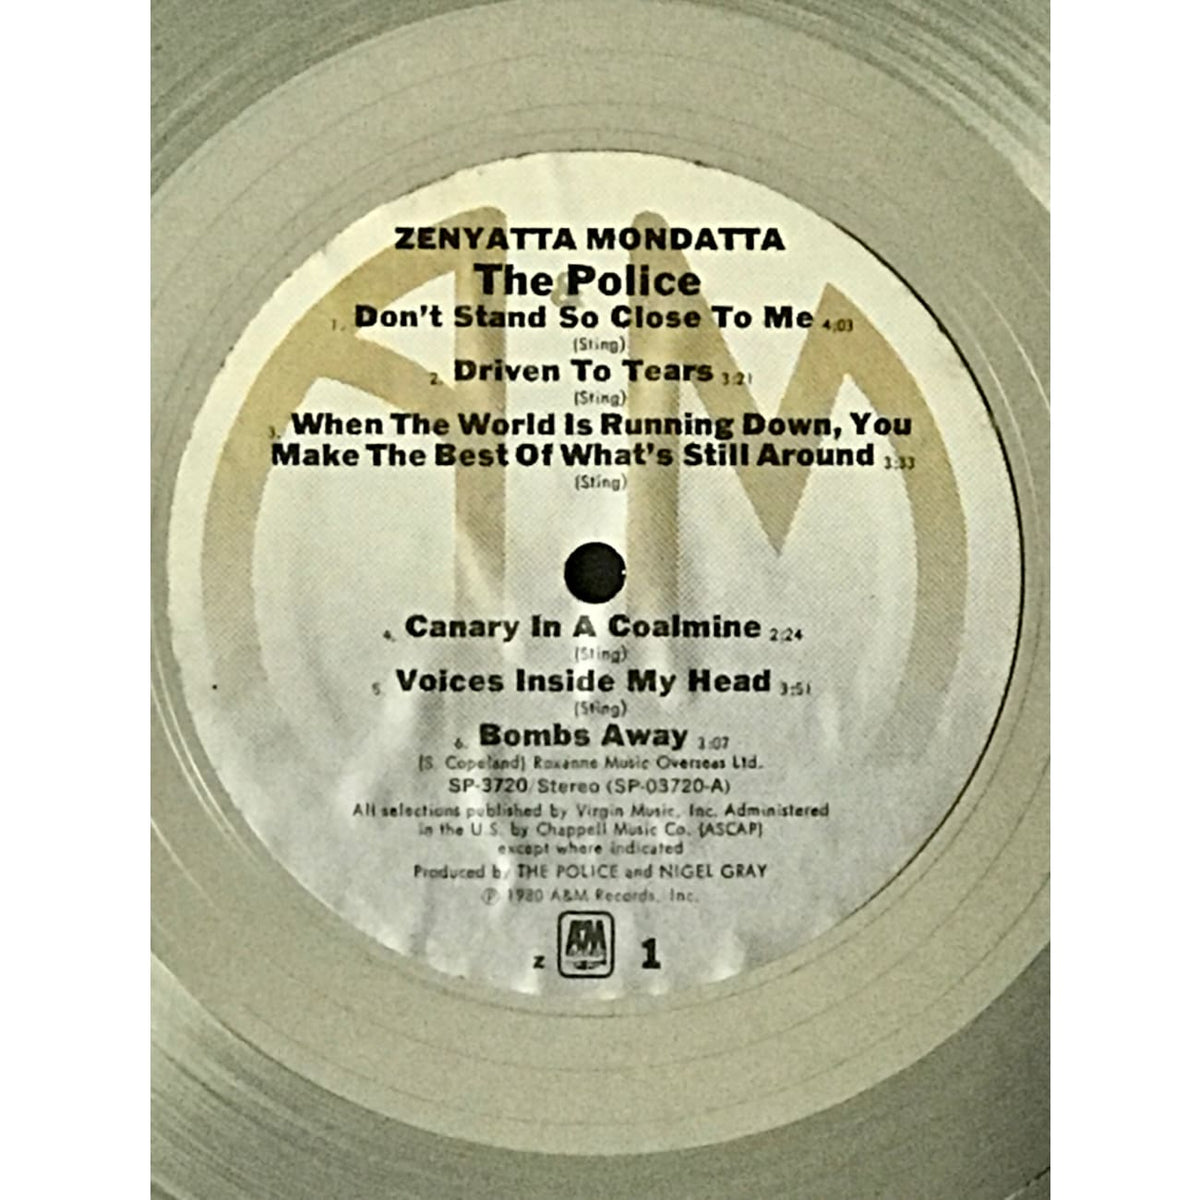 The Police Zenyatta Mondatta A&M Records award